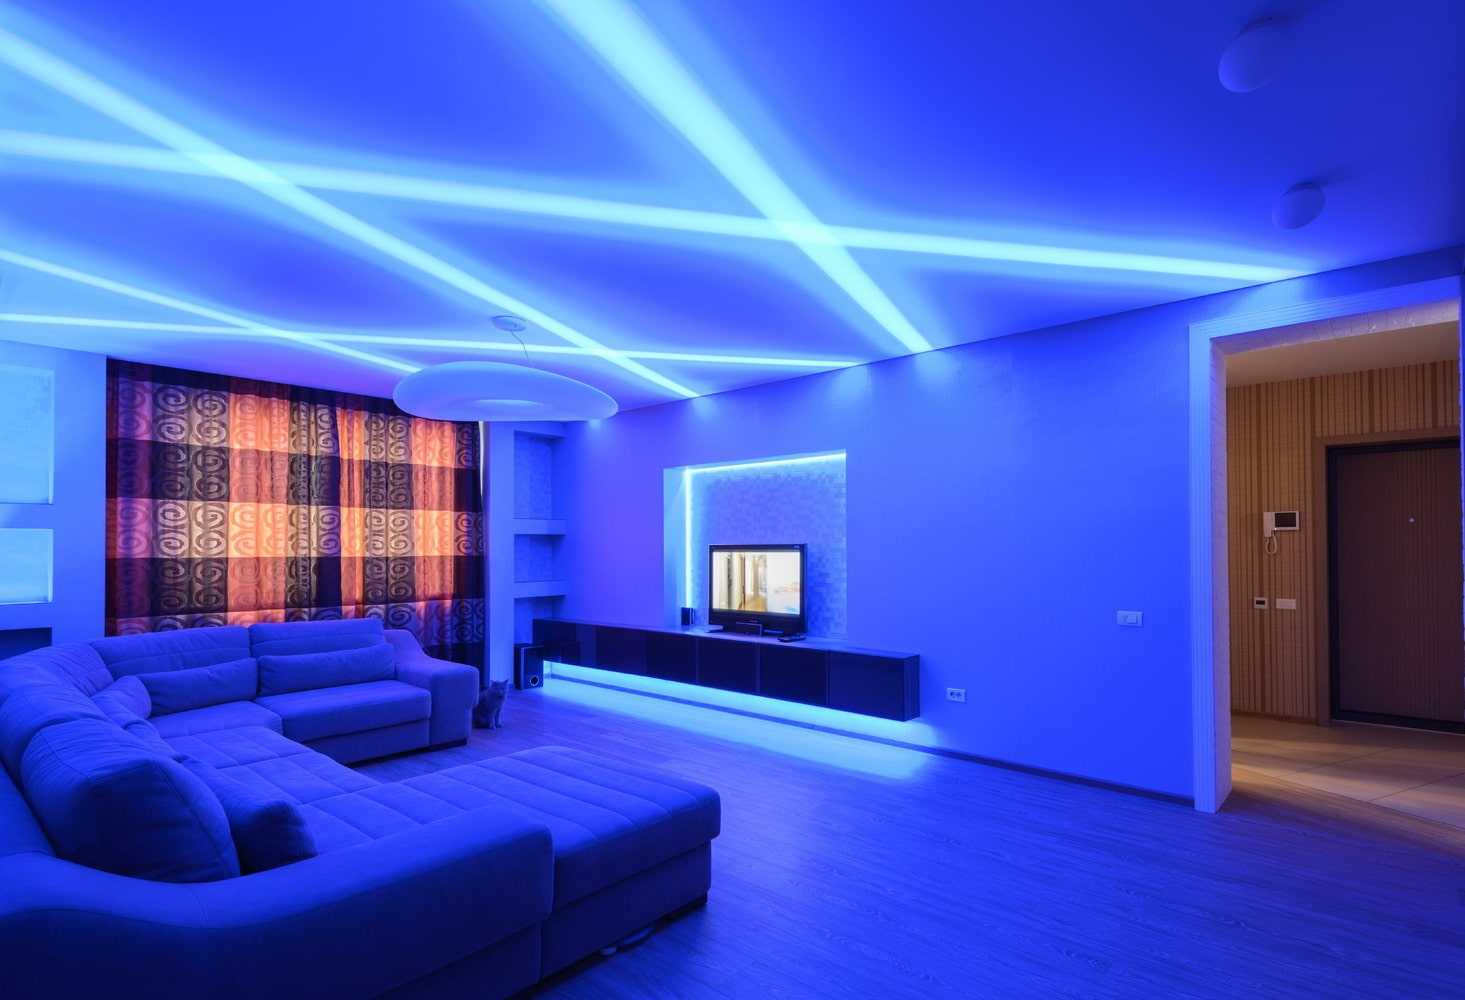 Светодиодная подсветка своими руками - как сделать в квартире, диодное освещение на кухне, для лестницы, мебели, штор и цветов, монтаж led панелей +фото